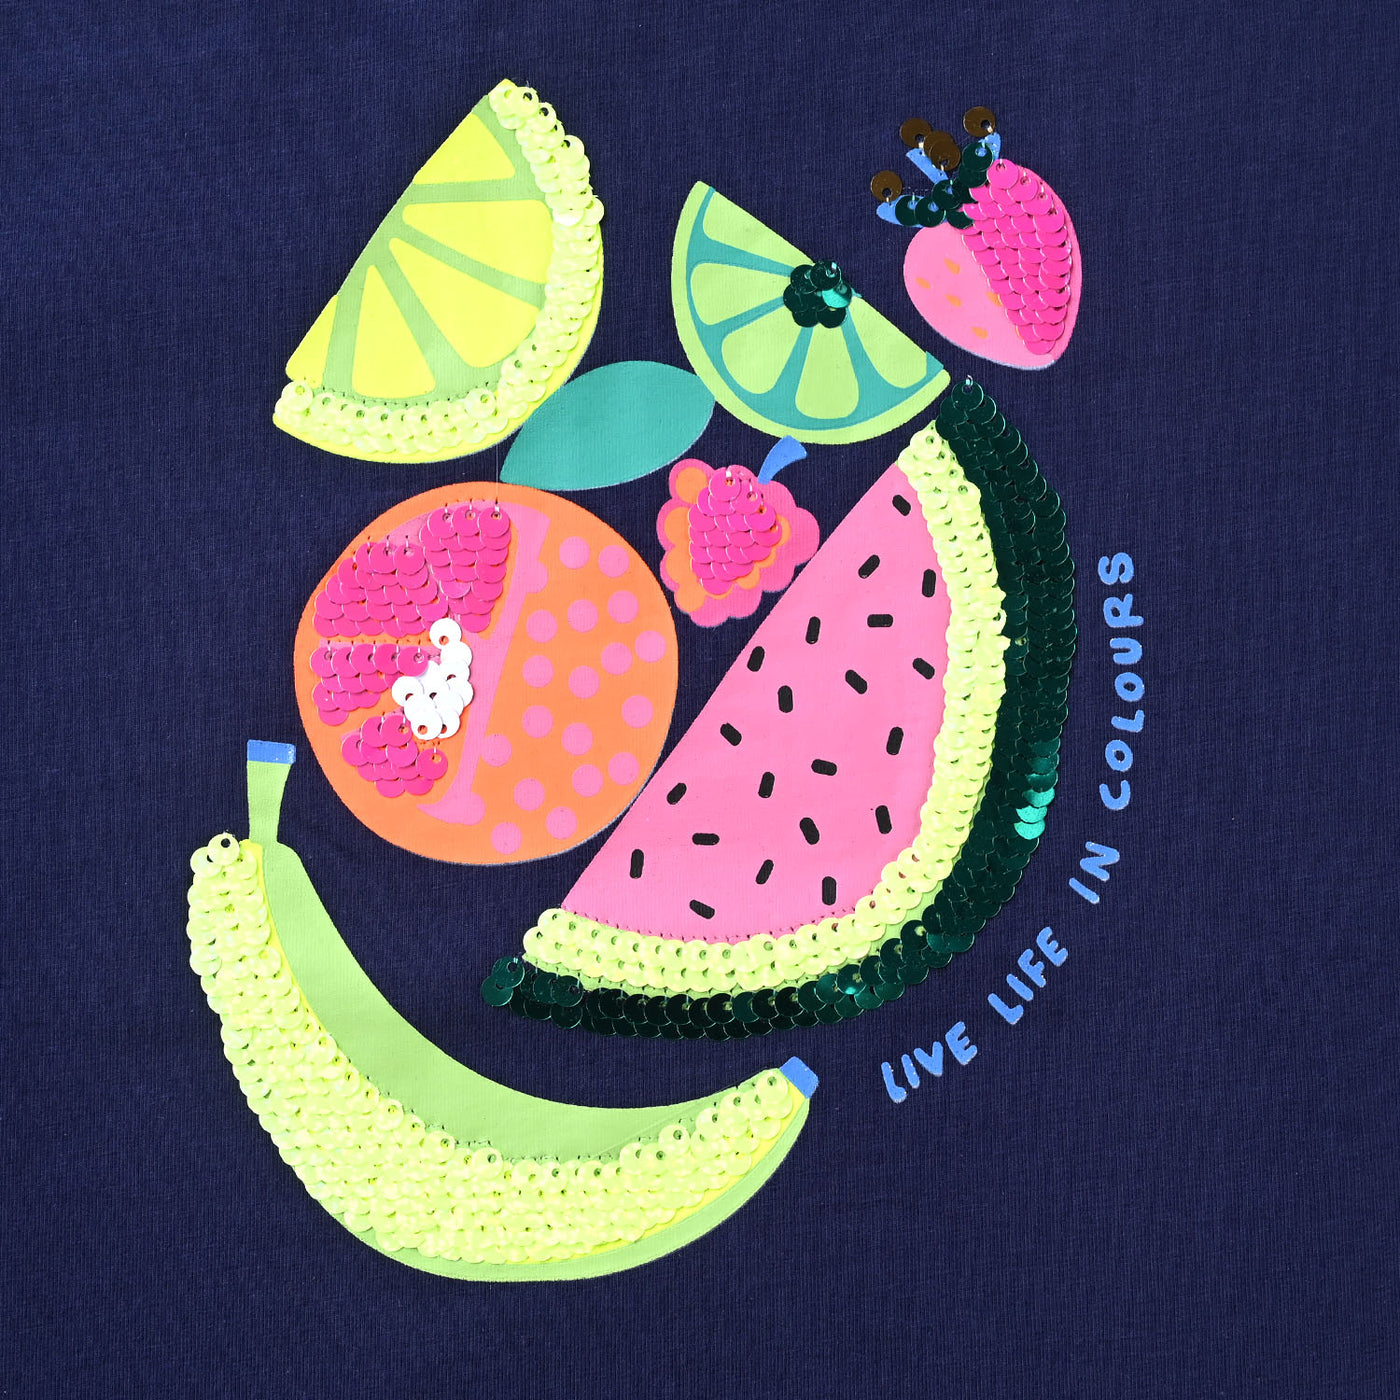 Girls Lycra Jersey T-Shirt Fruits-NAVY